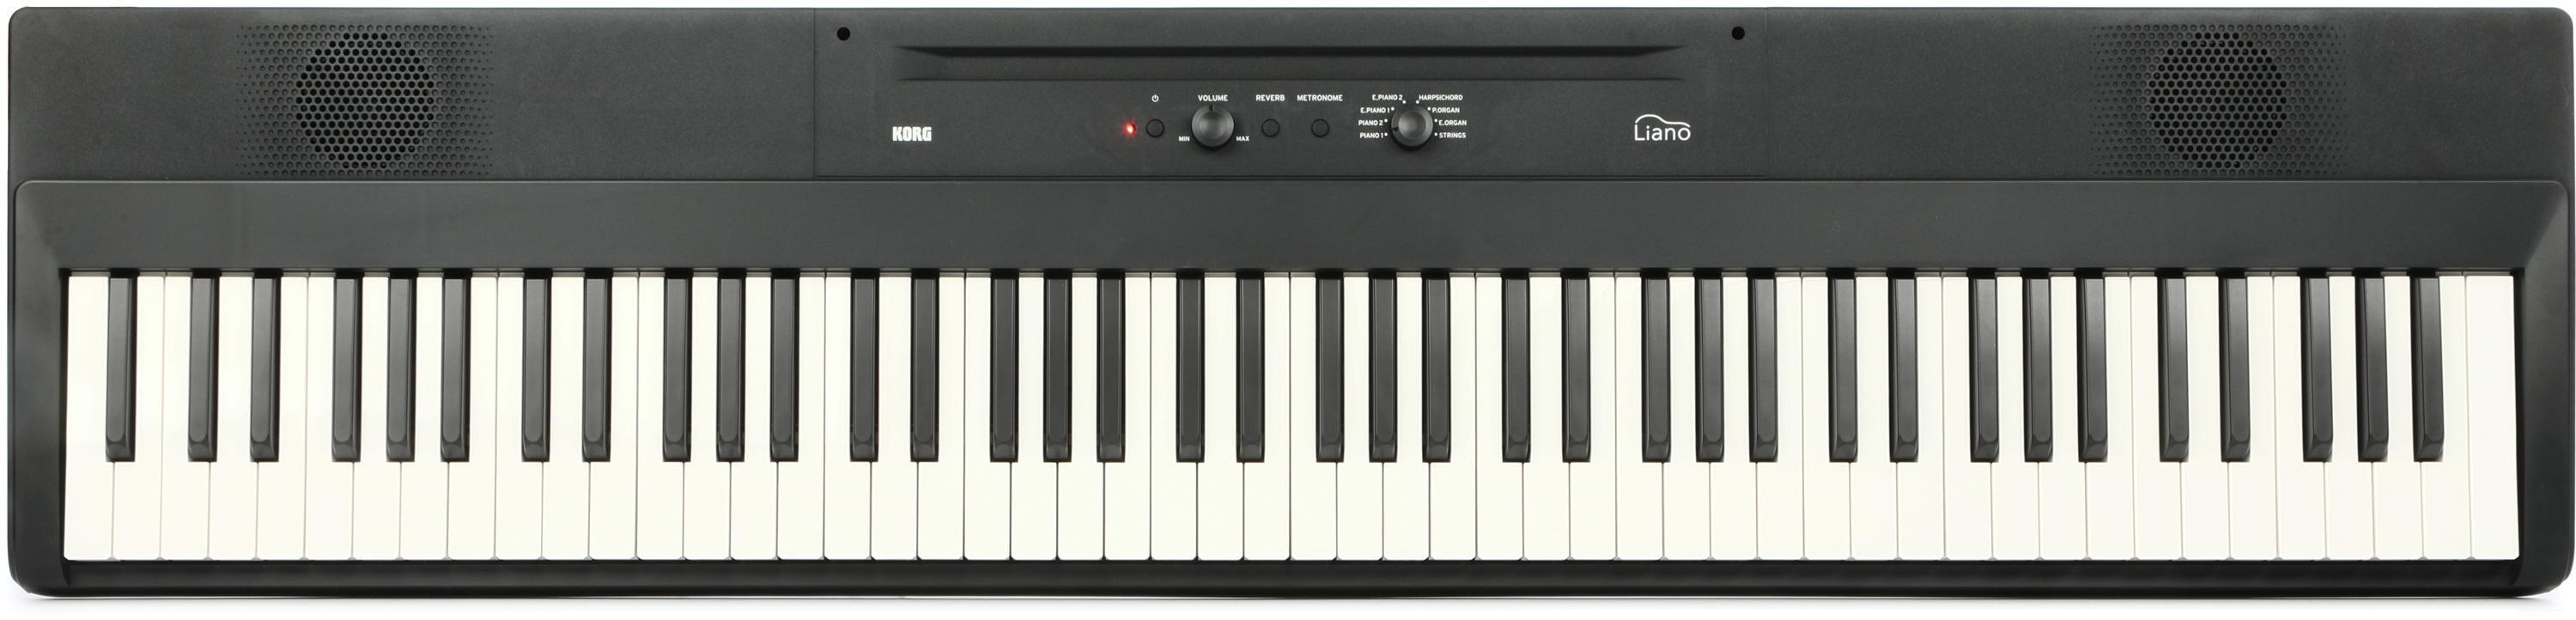 Liano - DIGITAL PIANO